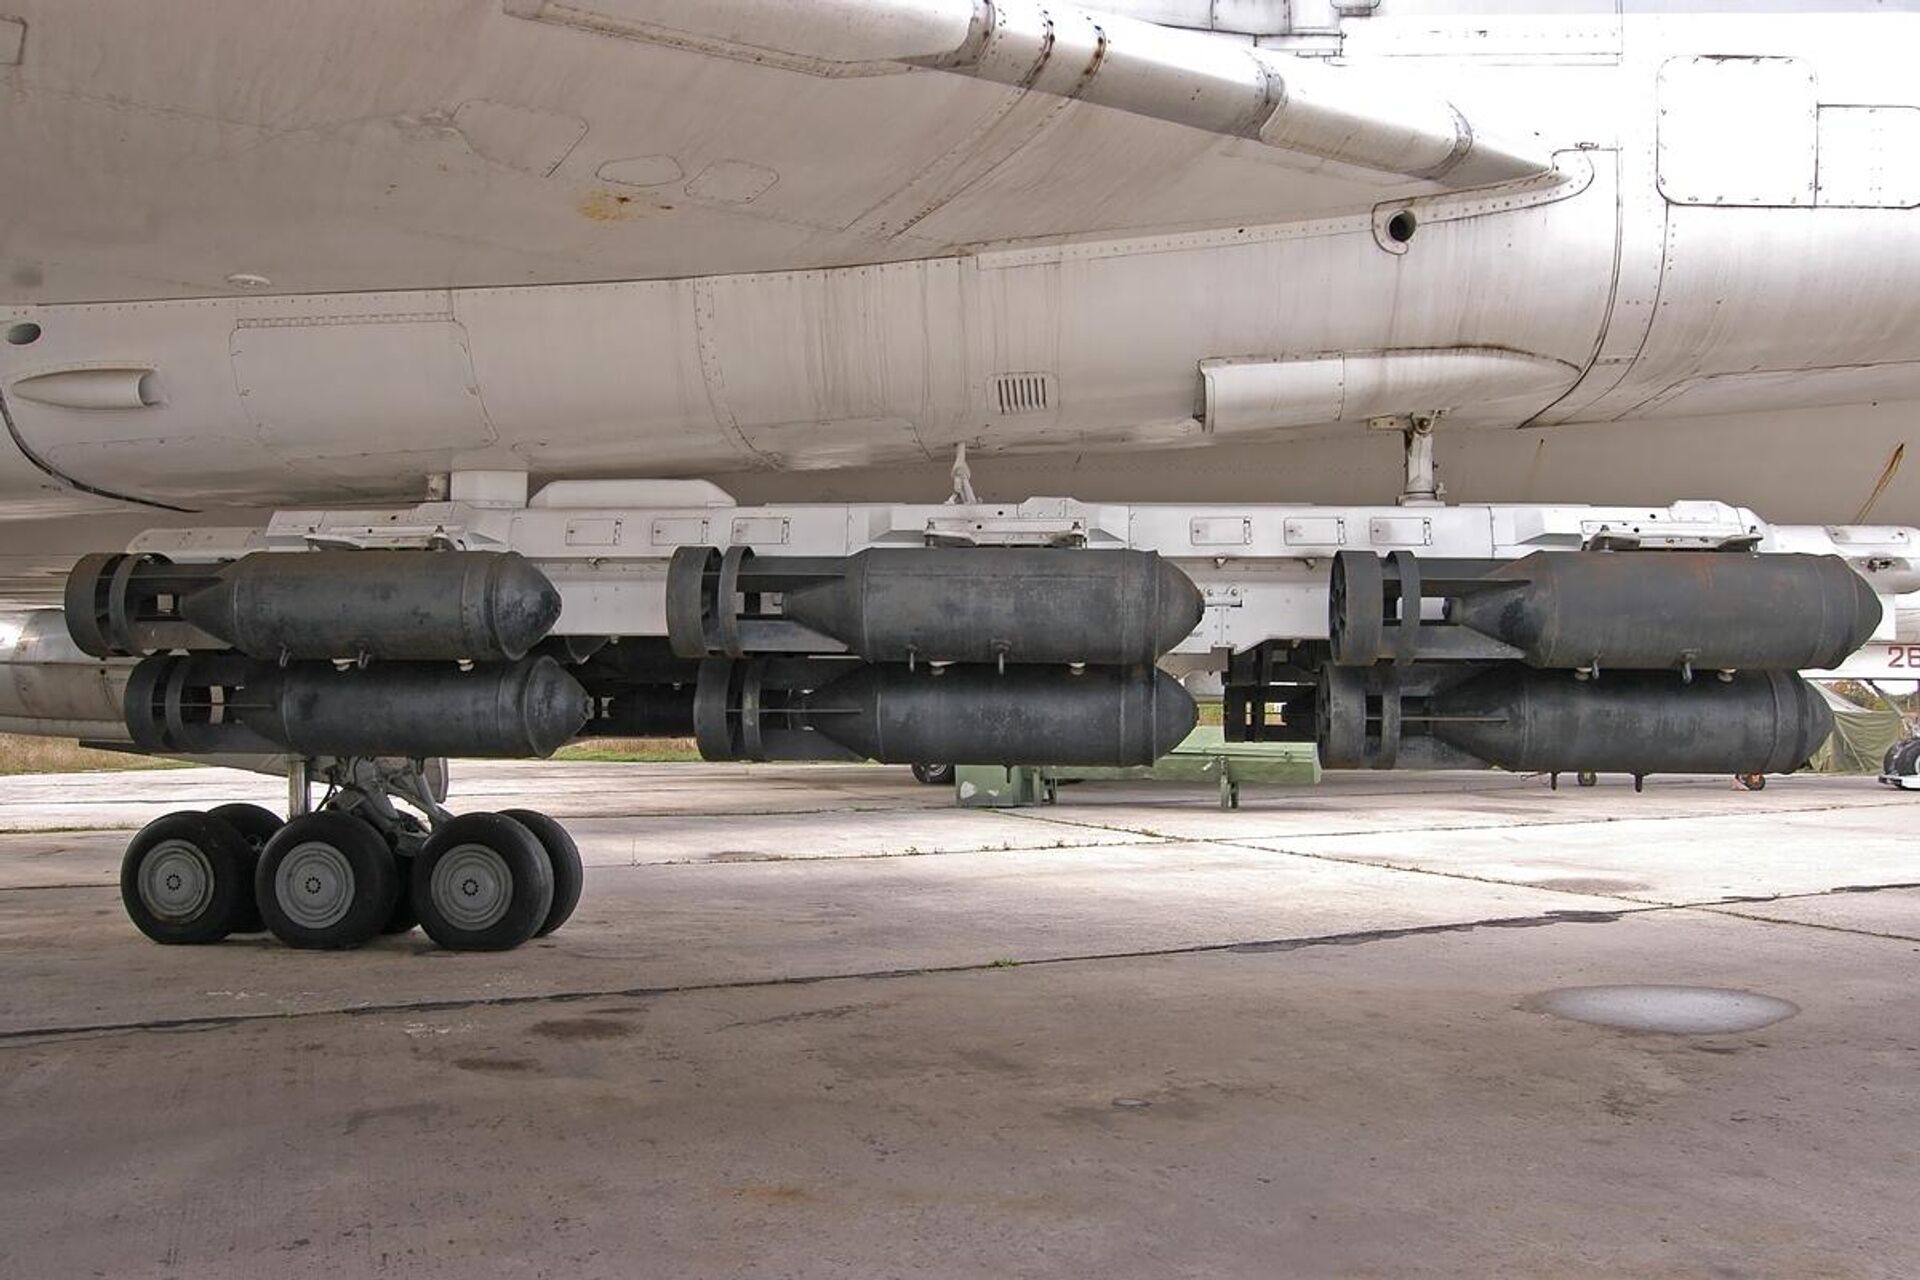 18 bombas FAB-500 suspendidas bajo un bombardero Tu-22M. En su conjunto, cuestan menos que un solo kit JDAM. - Sputnik Mundo, 1920, 29.08.2023